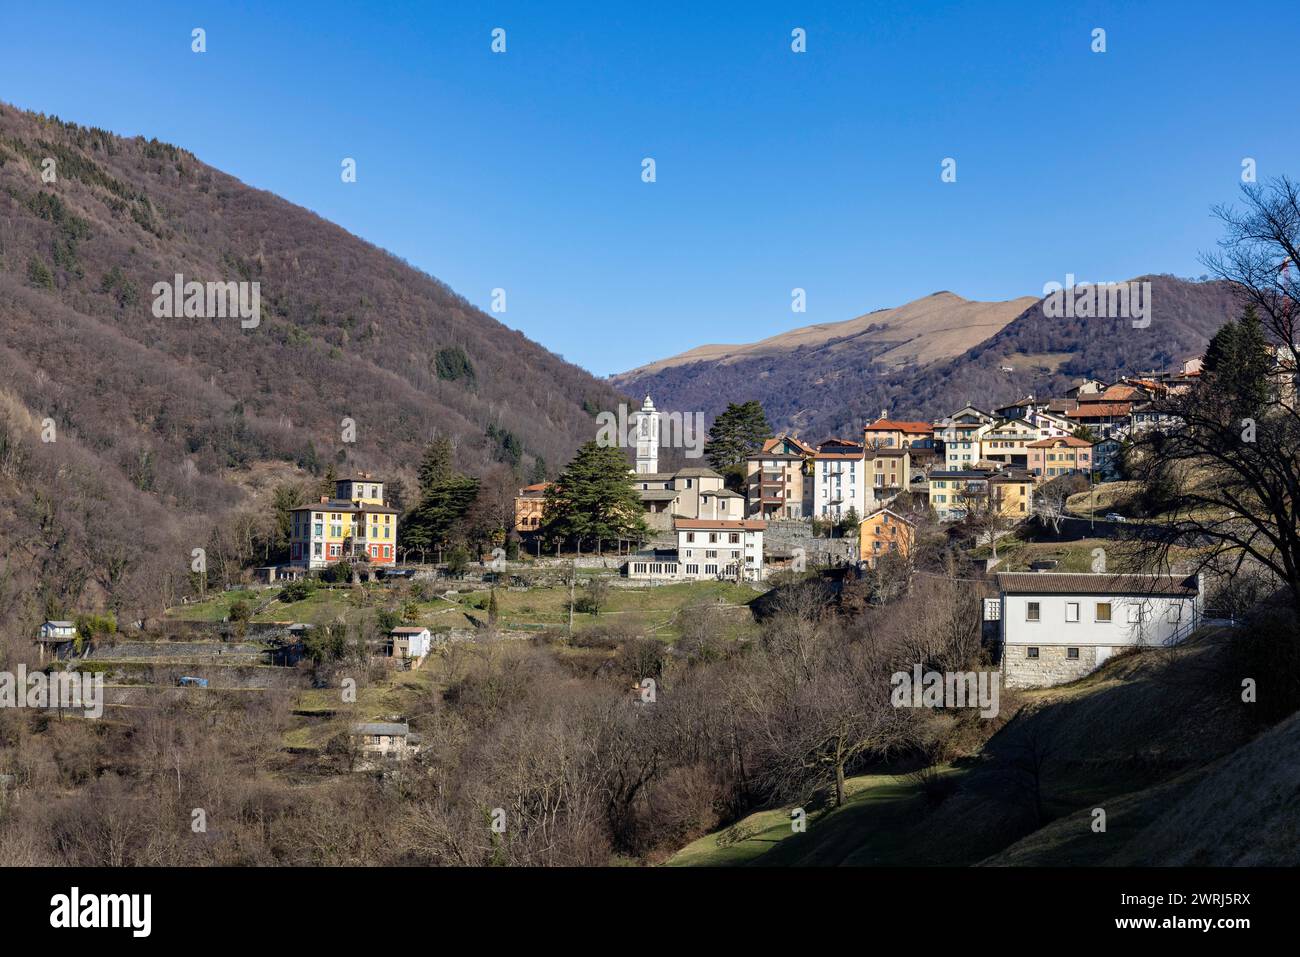 Village view of Bruzella, Valle di Muggio, Breggia, Ticino, Switzerland Stock Photo